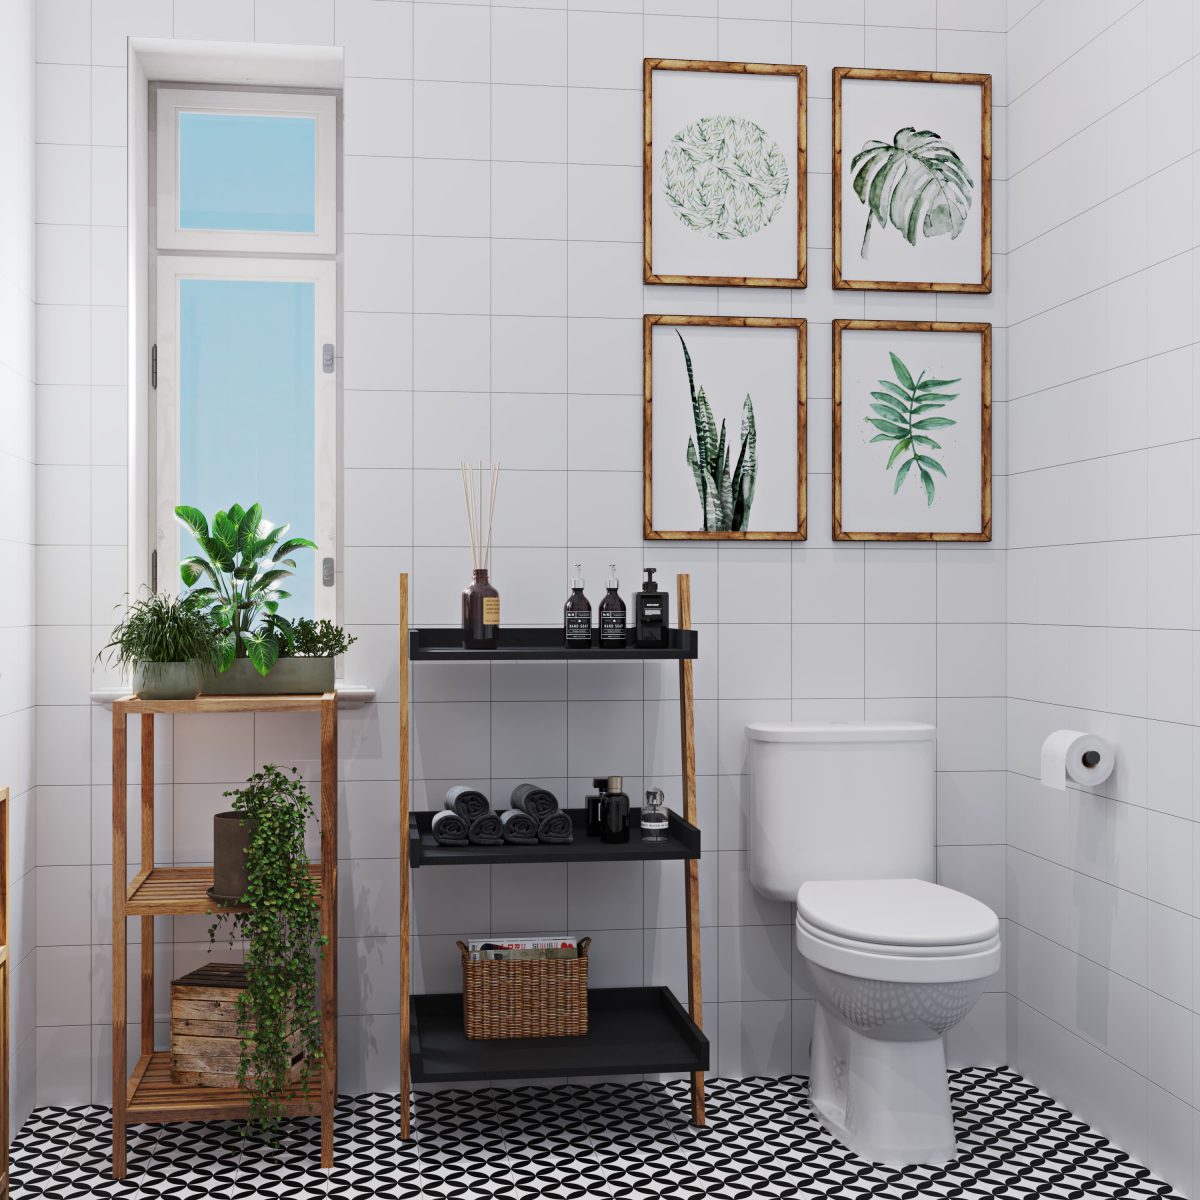 SIKO kombi WC, koupelnový regál s černými policemi, dřevěný regál, černobílá dlažba, bílé obklady, květiny v koupelně, vzdušný prostor v koupelně